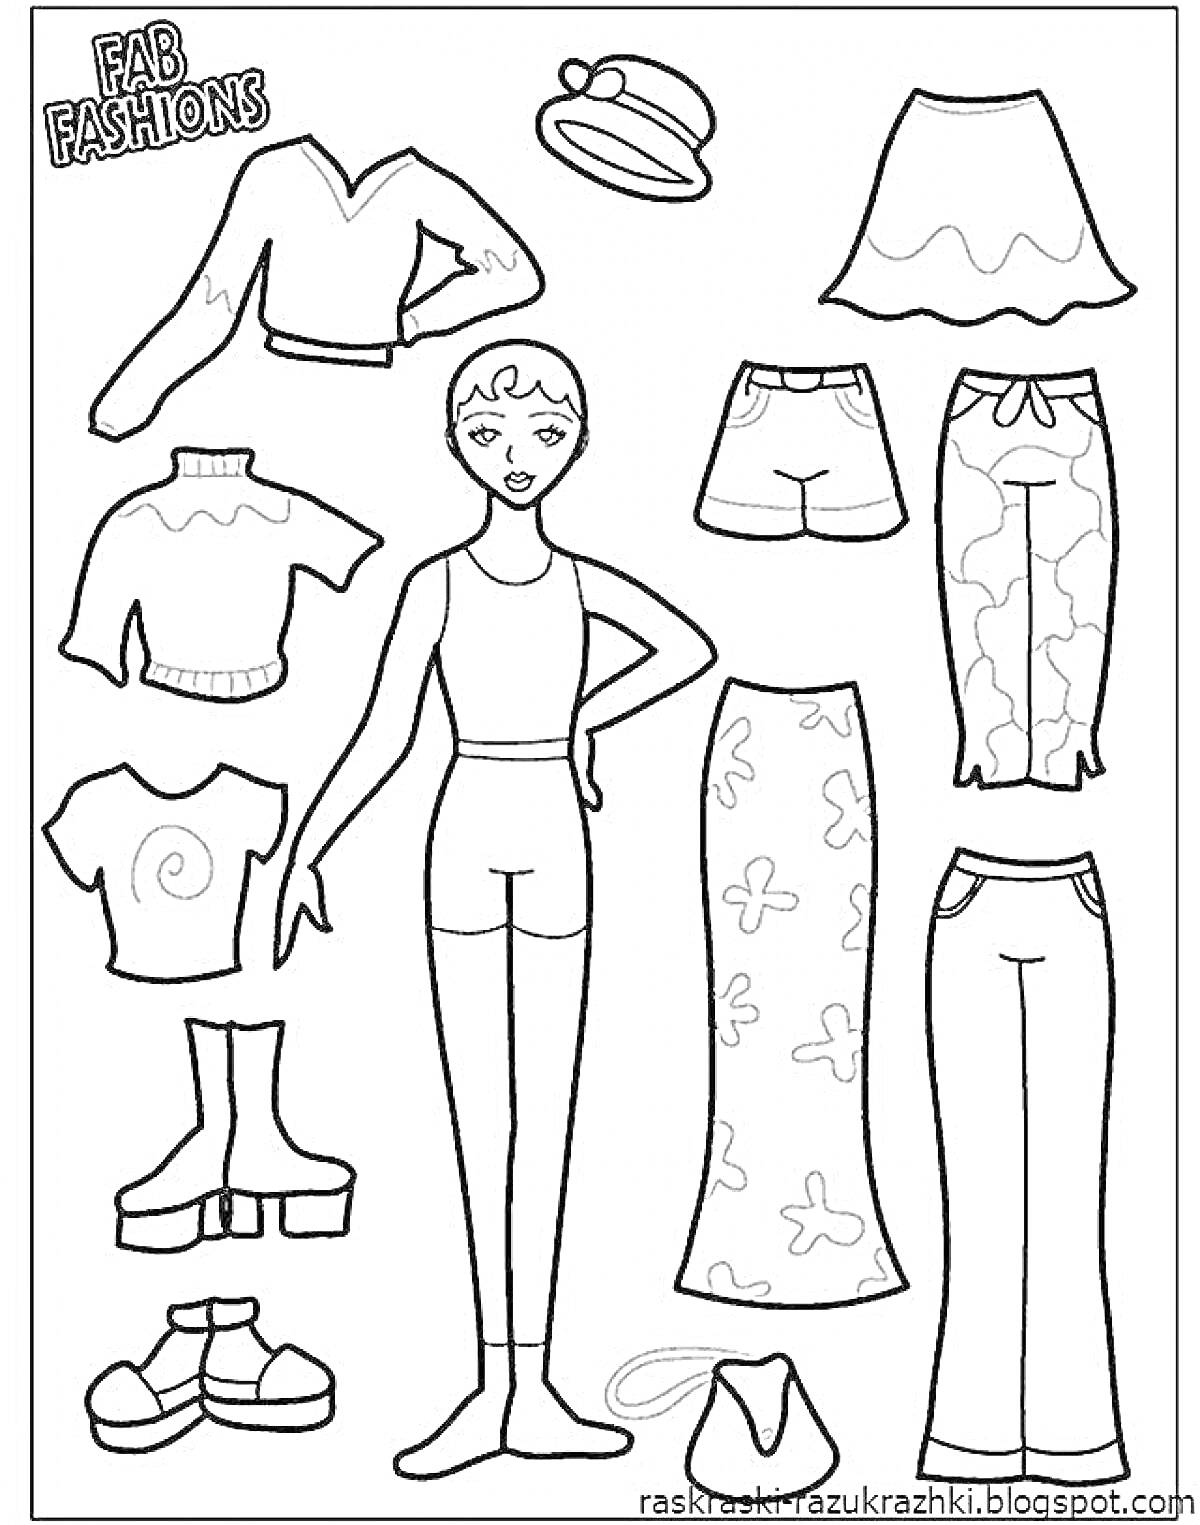 Кукла с комплектом одежды и аксессуаров: кофта и юбка, топ и шорты, топ и брюки, кофта с брюками, панама, сапоги и ботинки